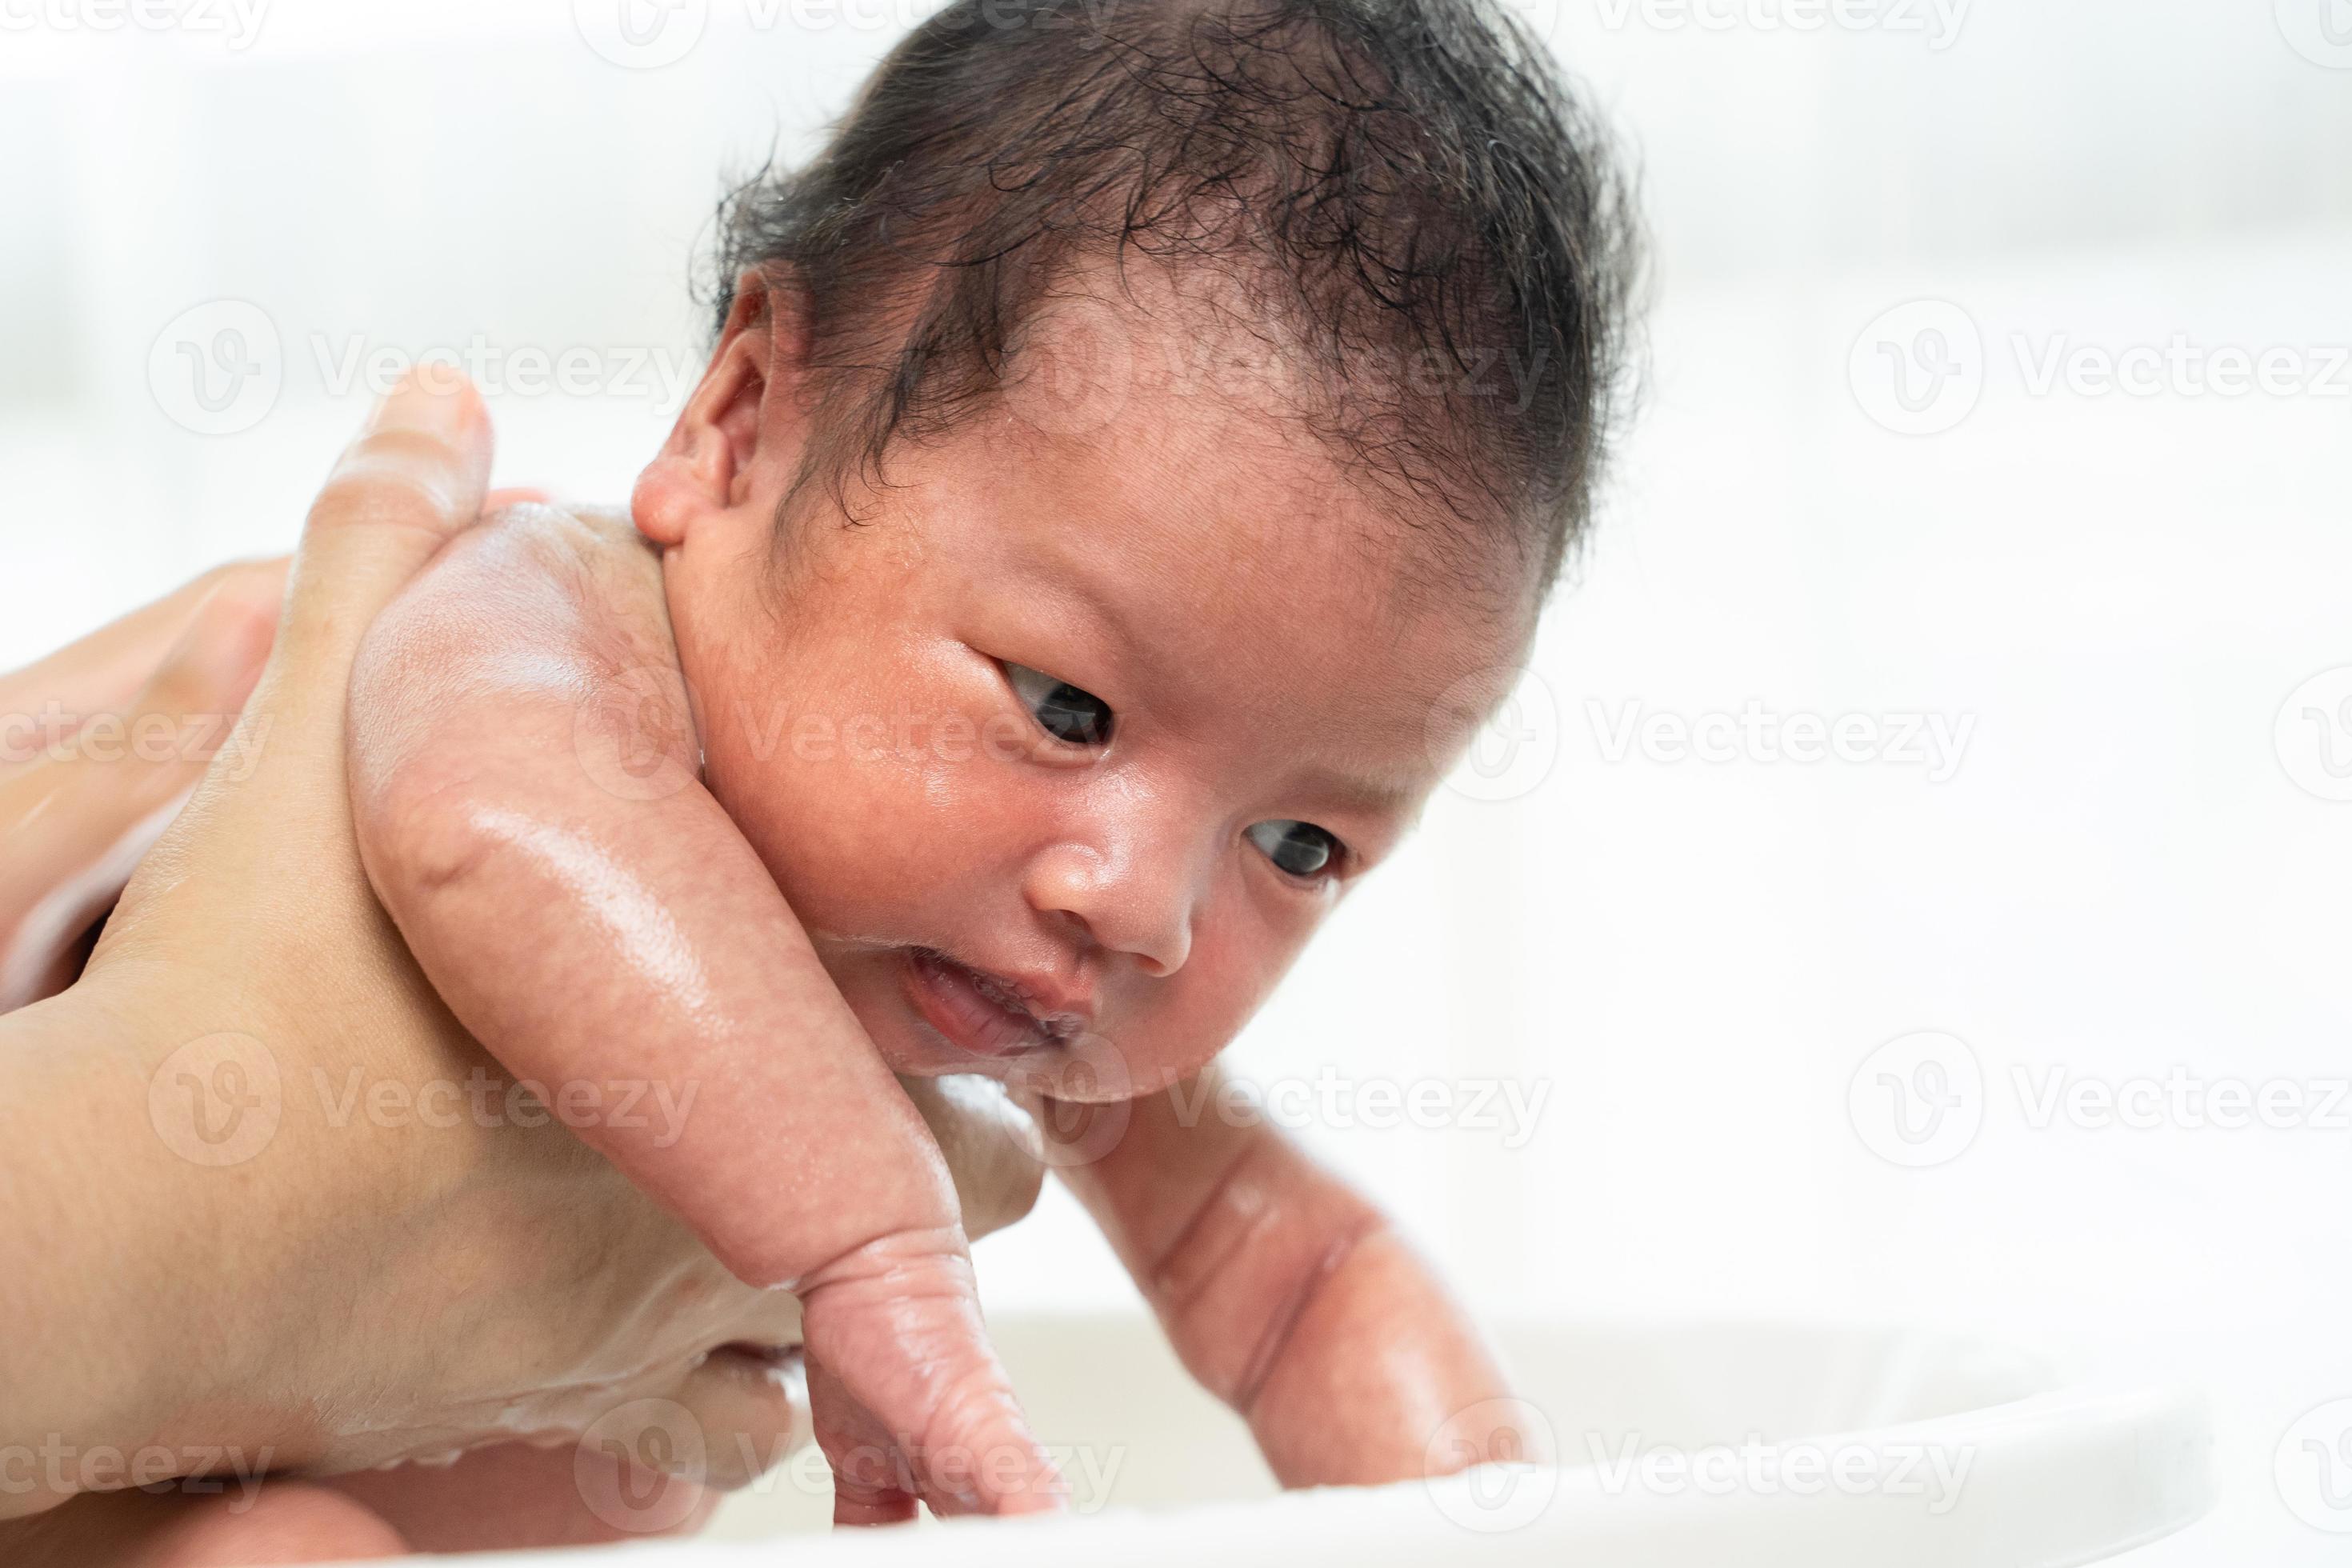 neonato viene lavato da sua madre usando la vasca a casa. foto